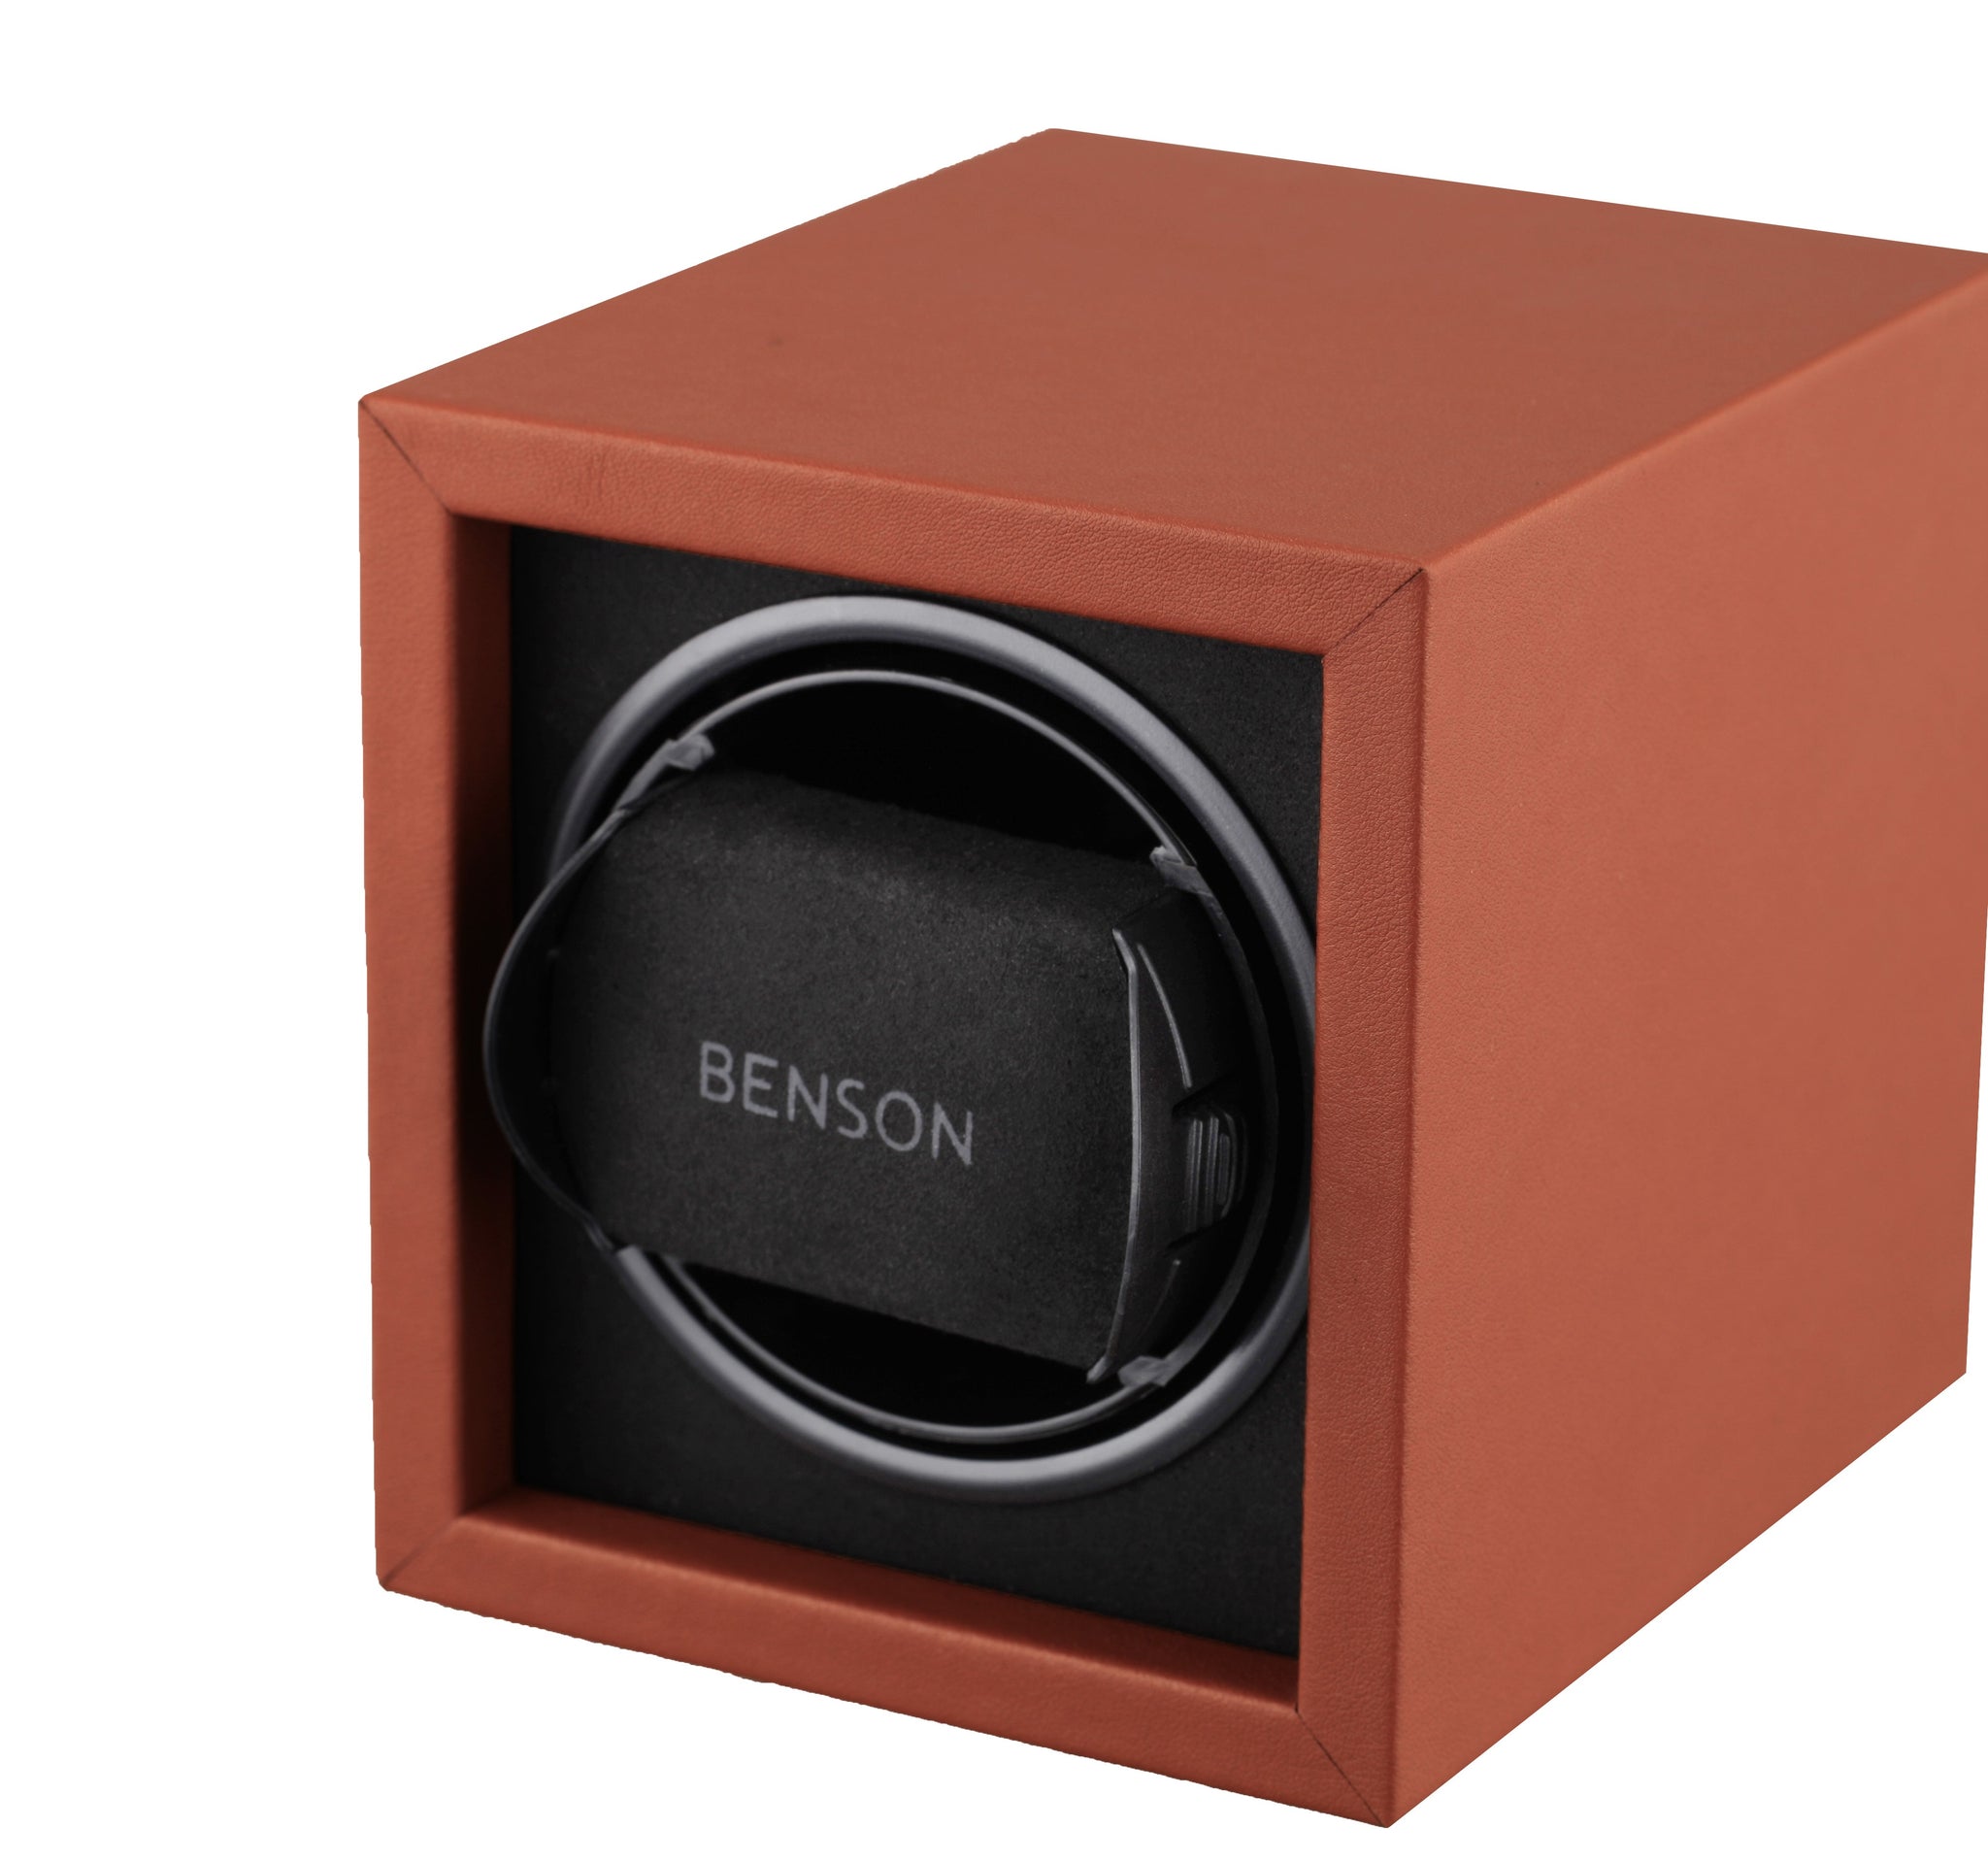 Remontoir de montre simple de la série Benson Compact